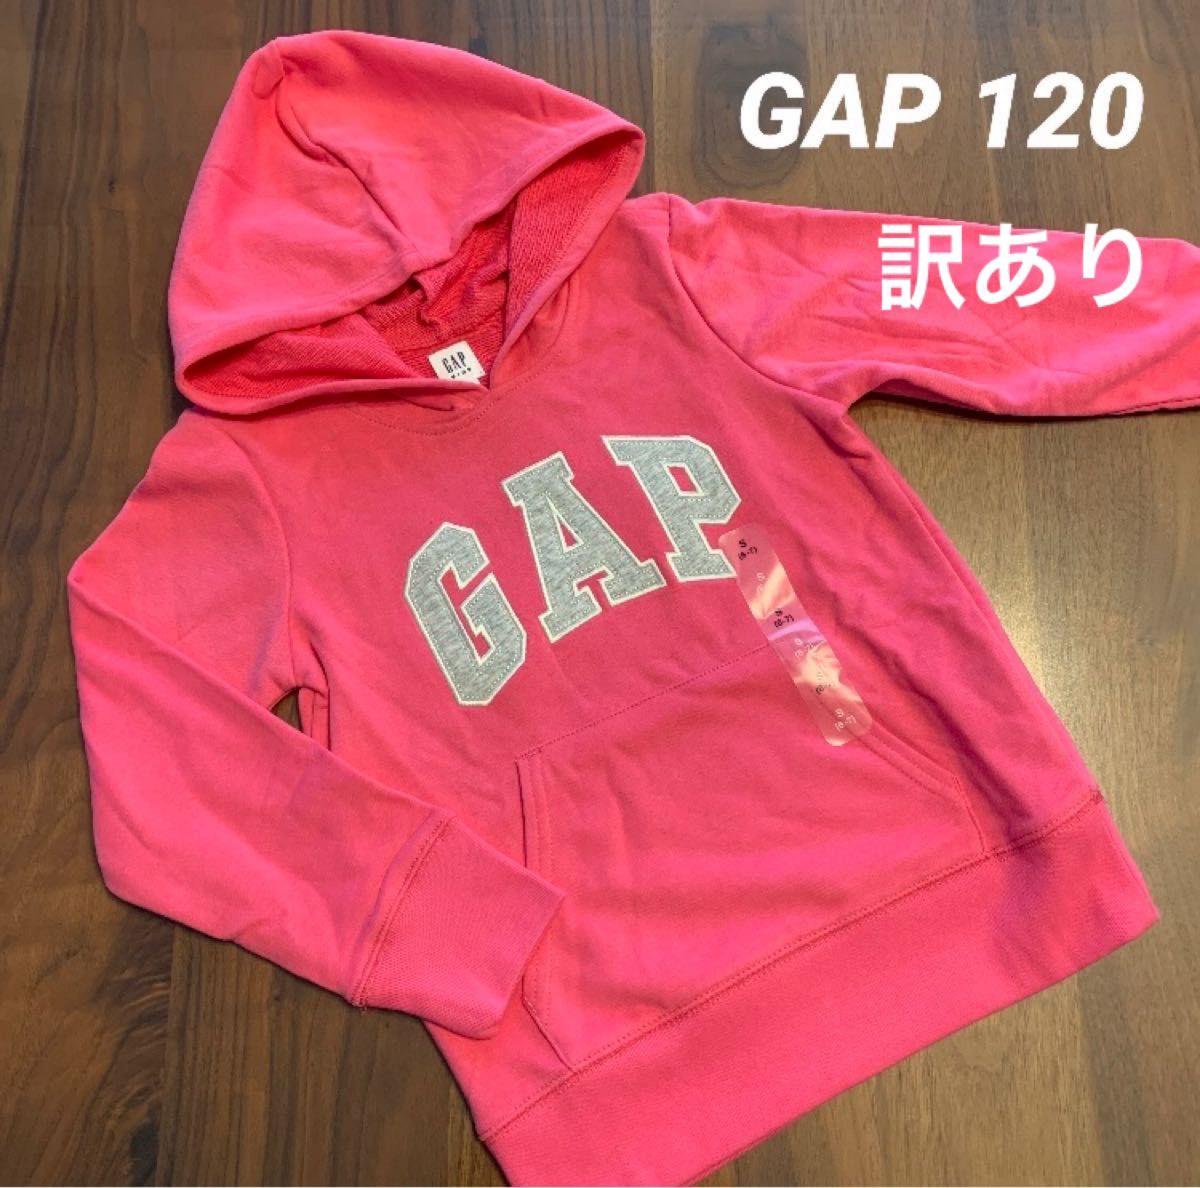 【新品・訳あり】GAP KIDS ギャップ キッズ ロゴ ピンク フード トレーナー パーカー 120cm 女の子 長袖